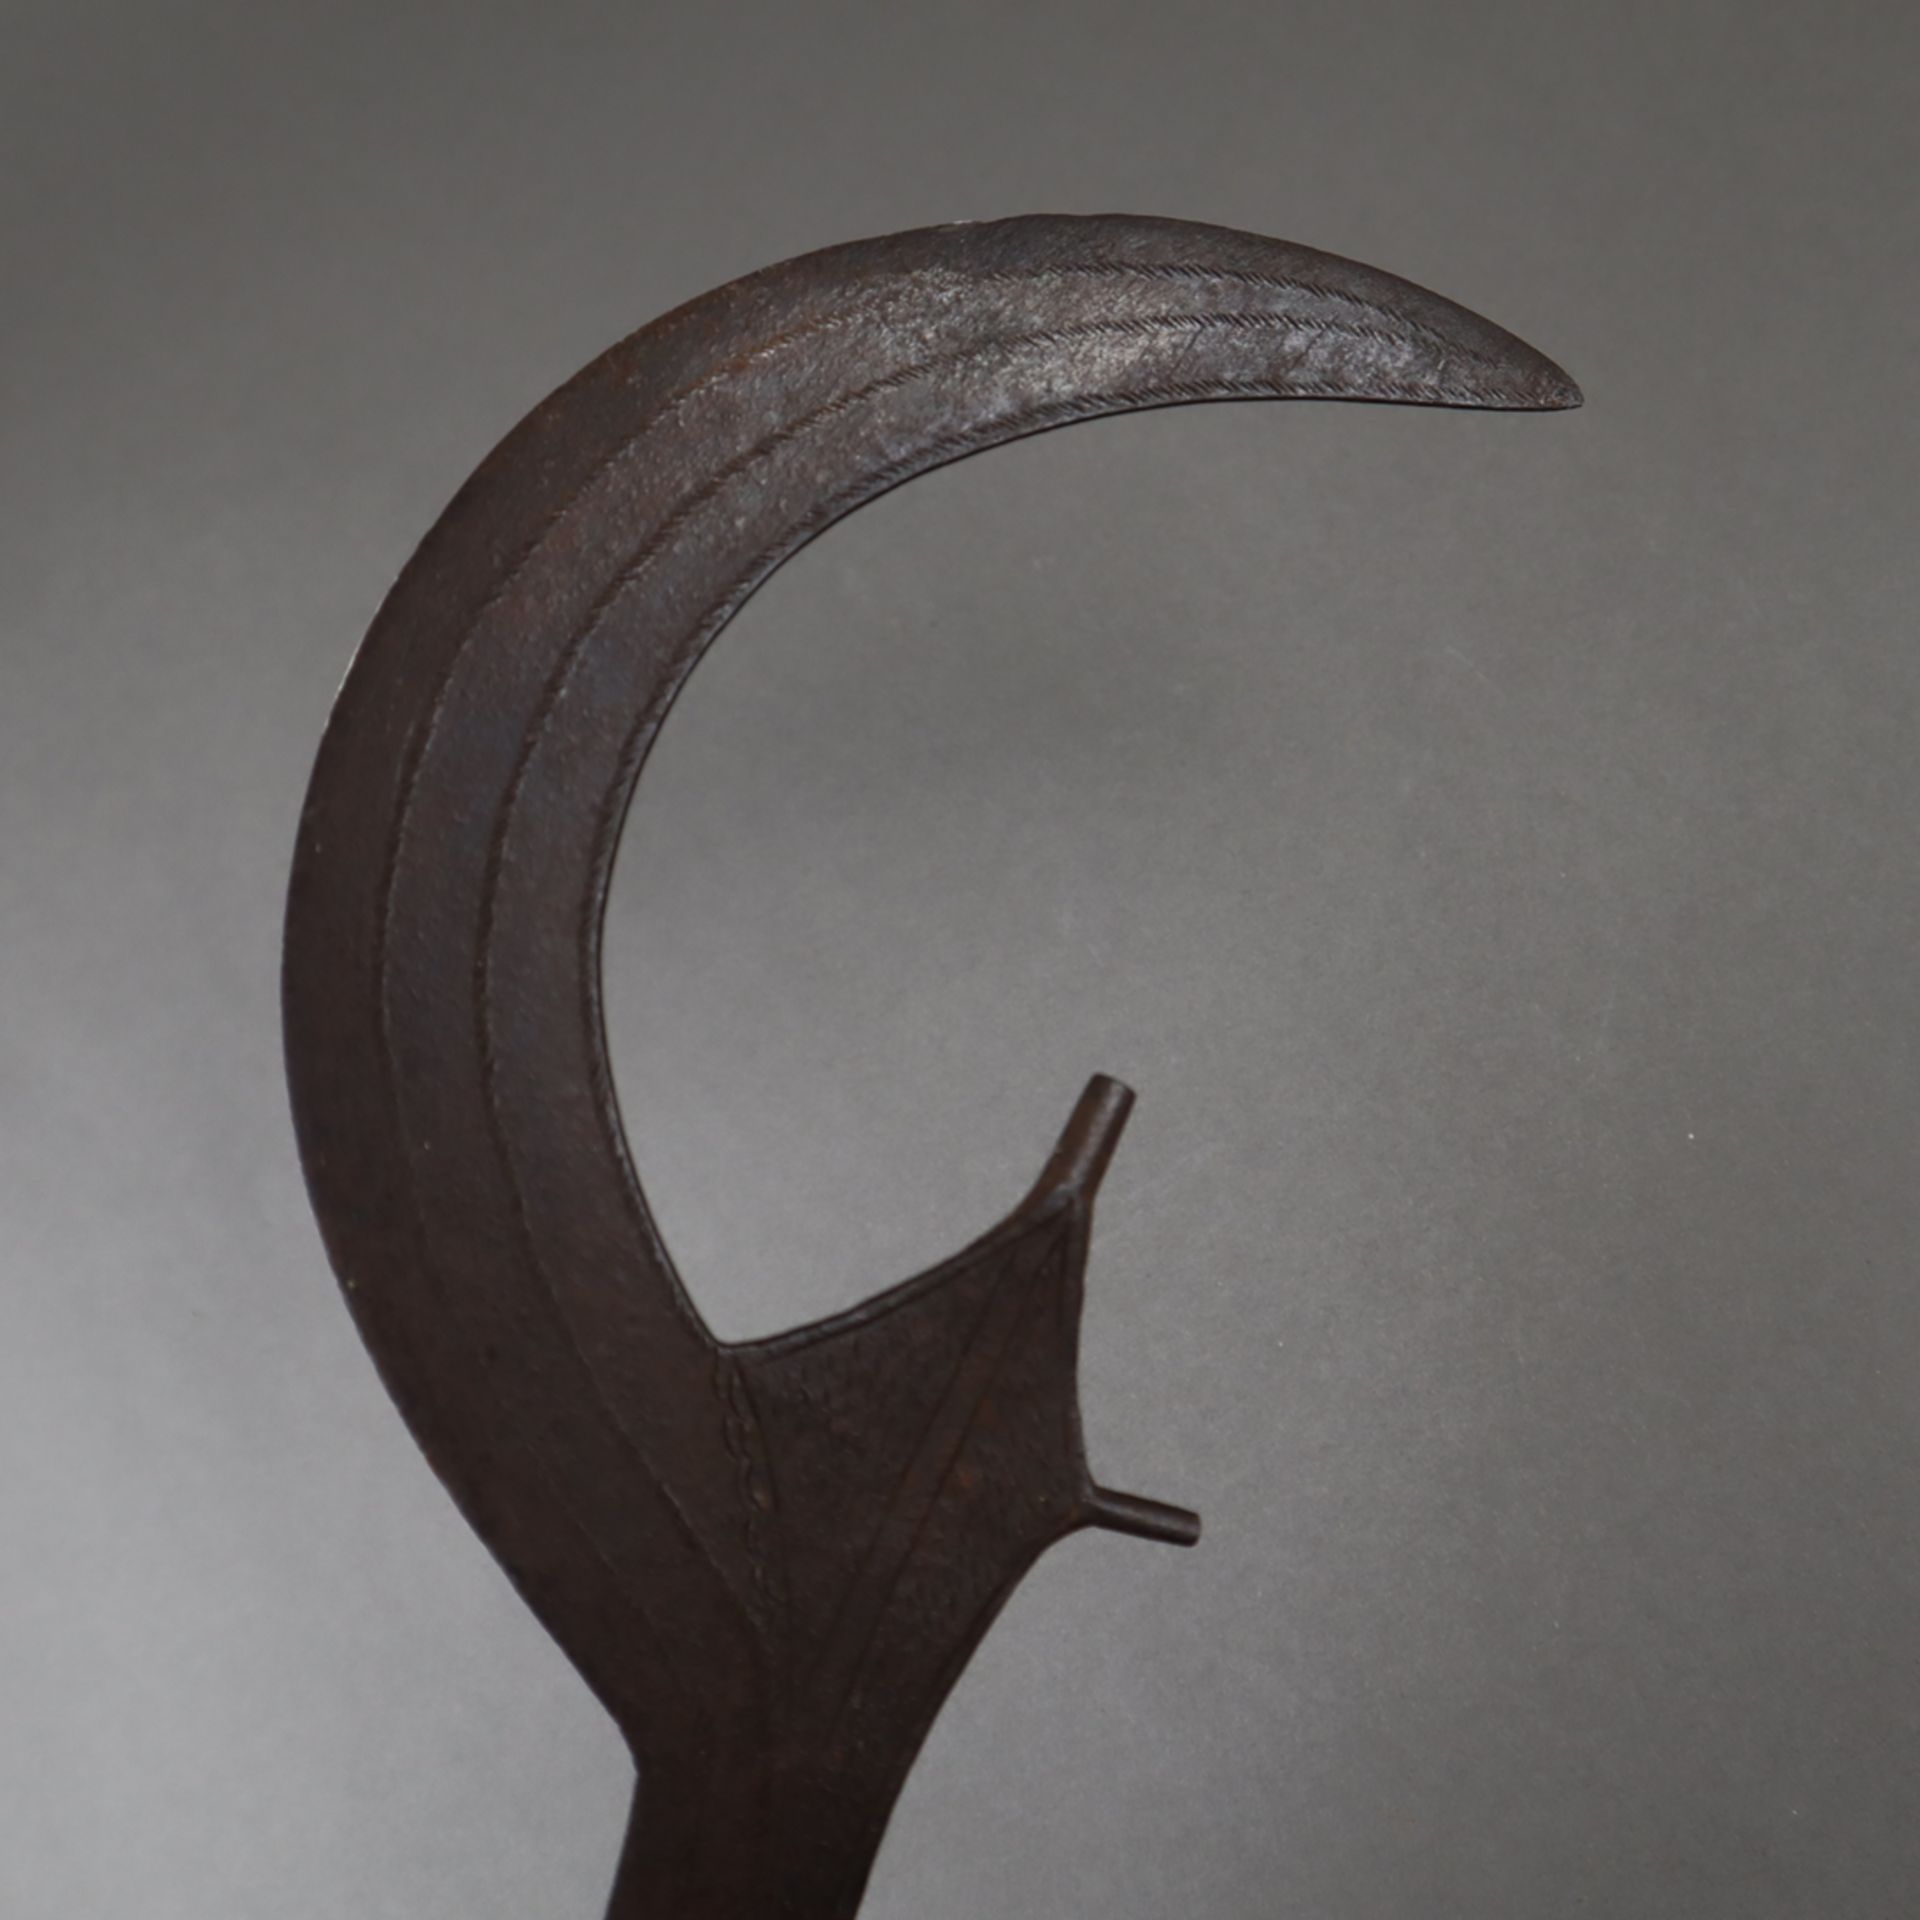 Ngulu - Sichelmesser/Richtschwert der Ngombe, D.R. Kongo, formtypische Eisenkli - Bild 2 aus 5